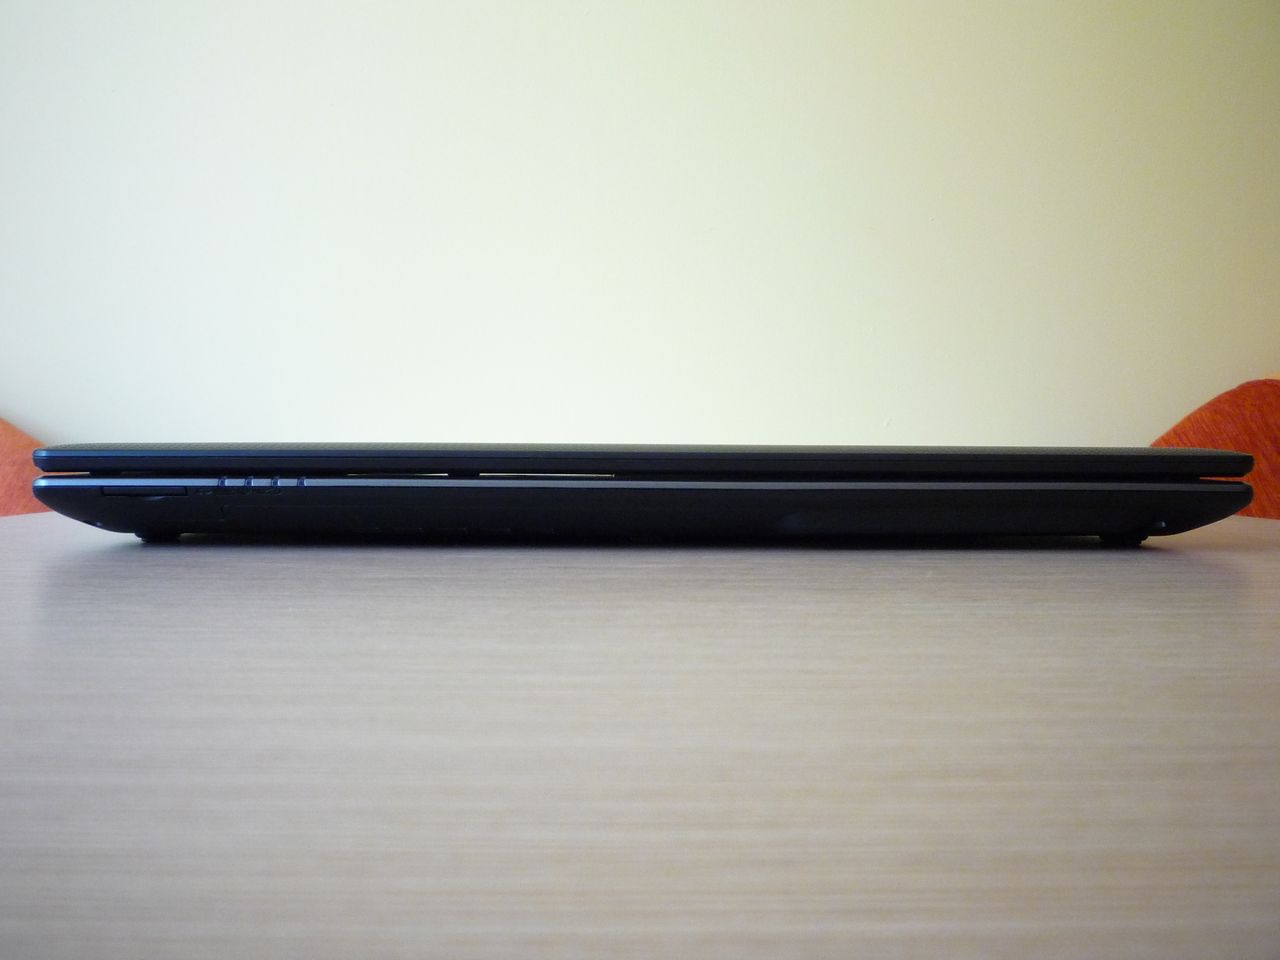 Acer Aspire 5560G - front (po lewej slot czytnika kart pamięci)